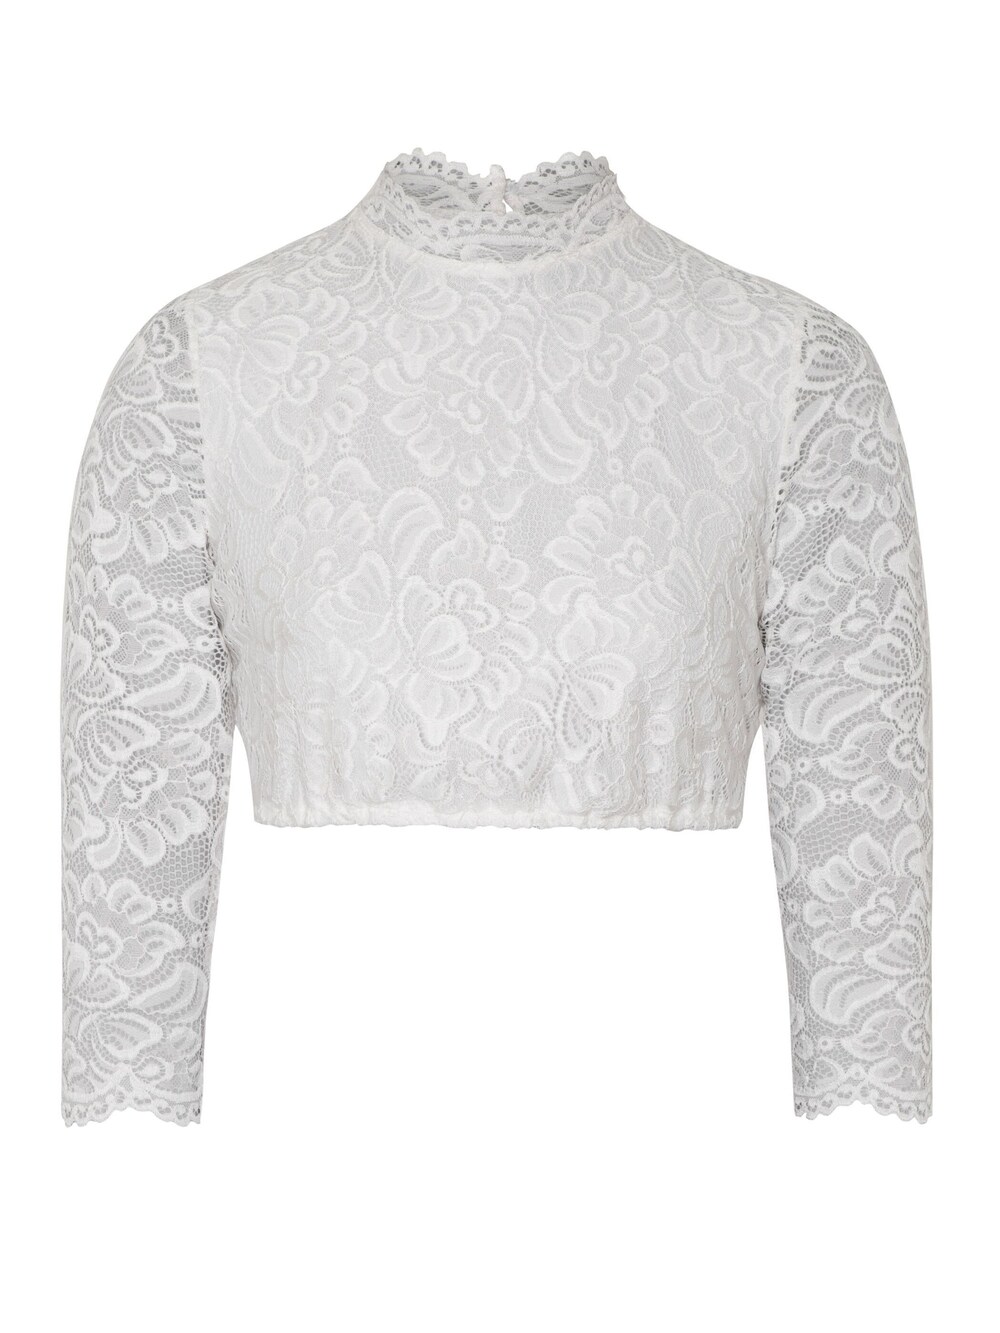 Традиционная блузка Spieth & Wensky, от белого